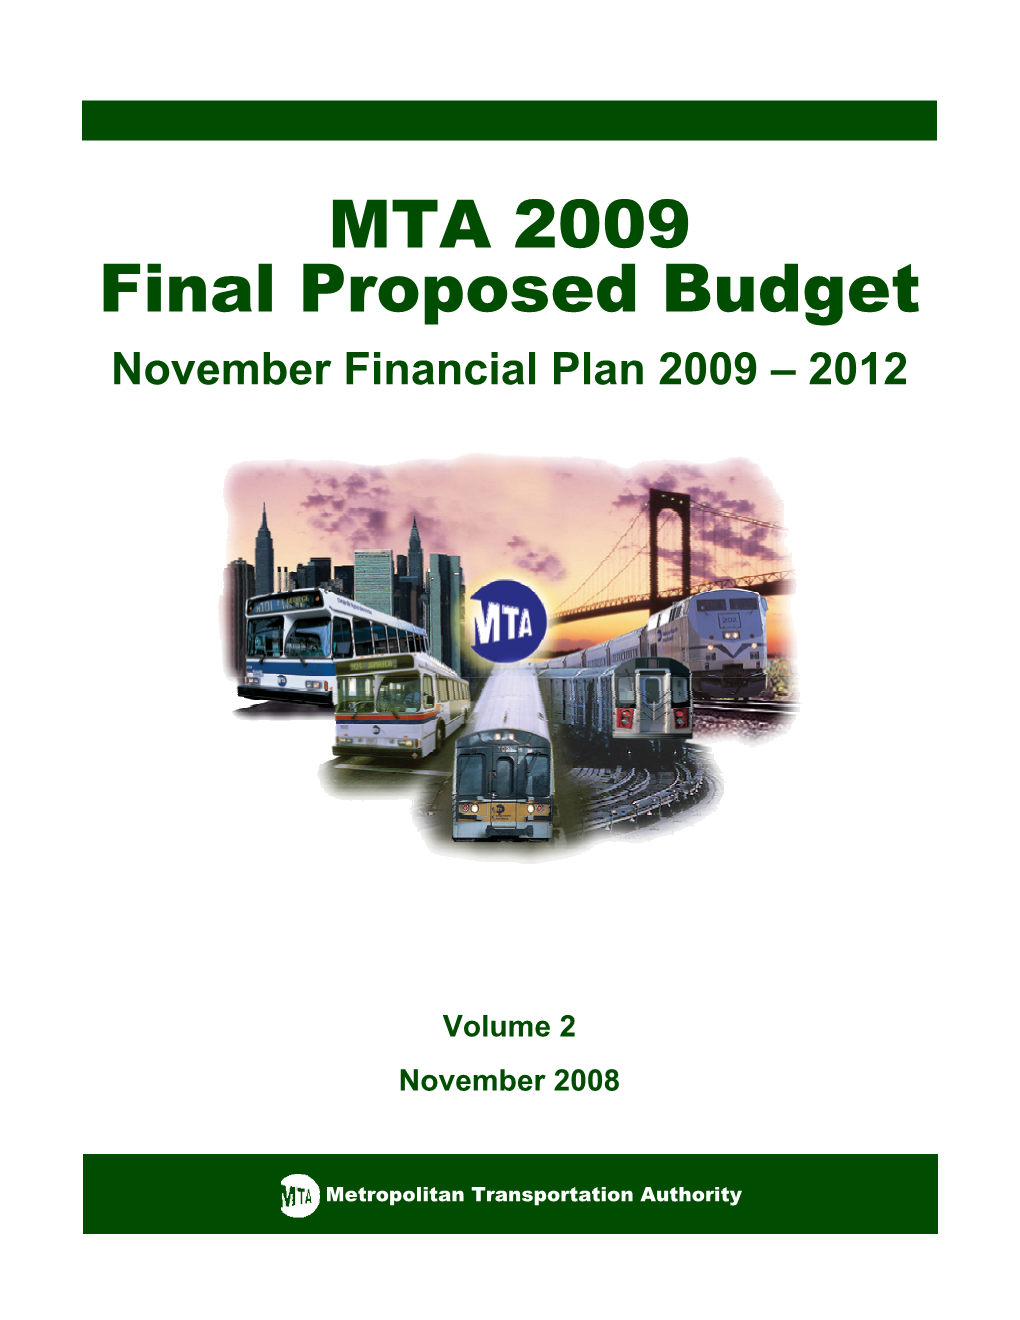 Volume 2 November 2008